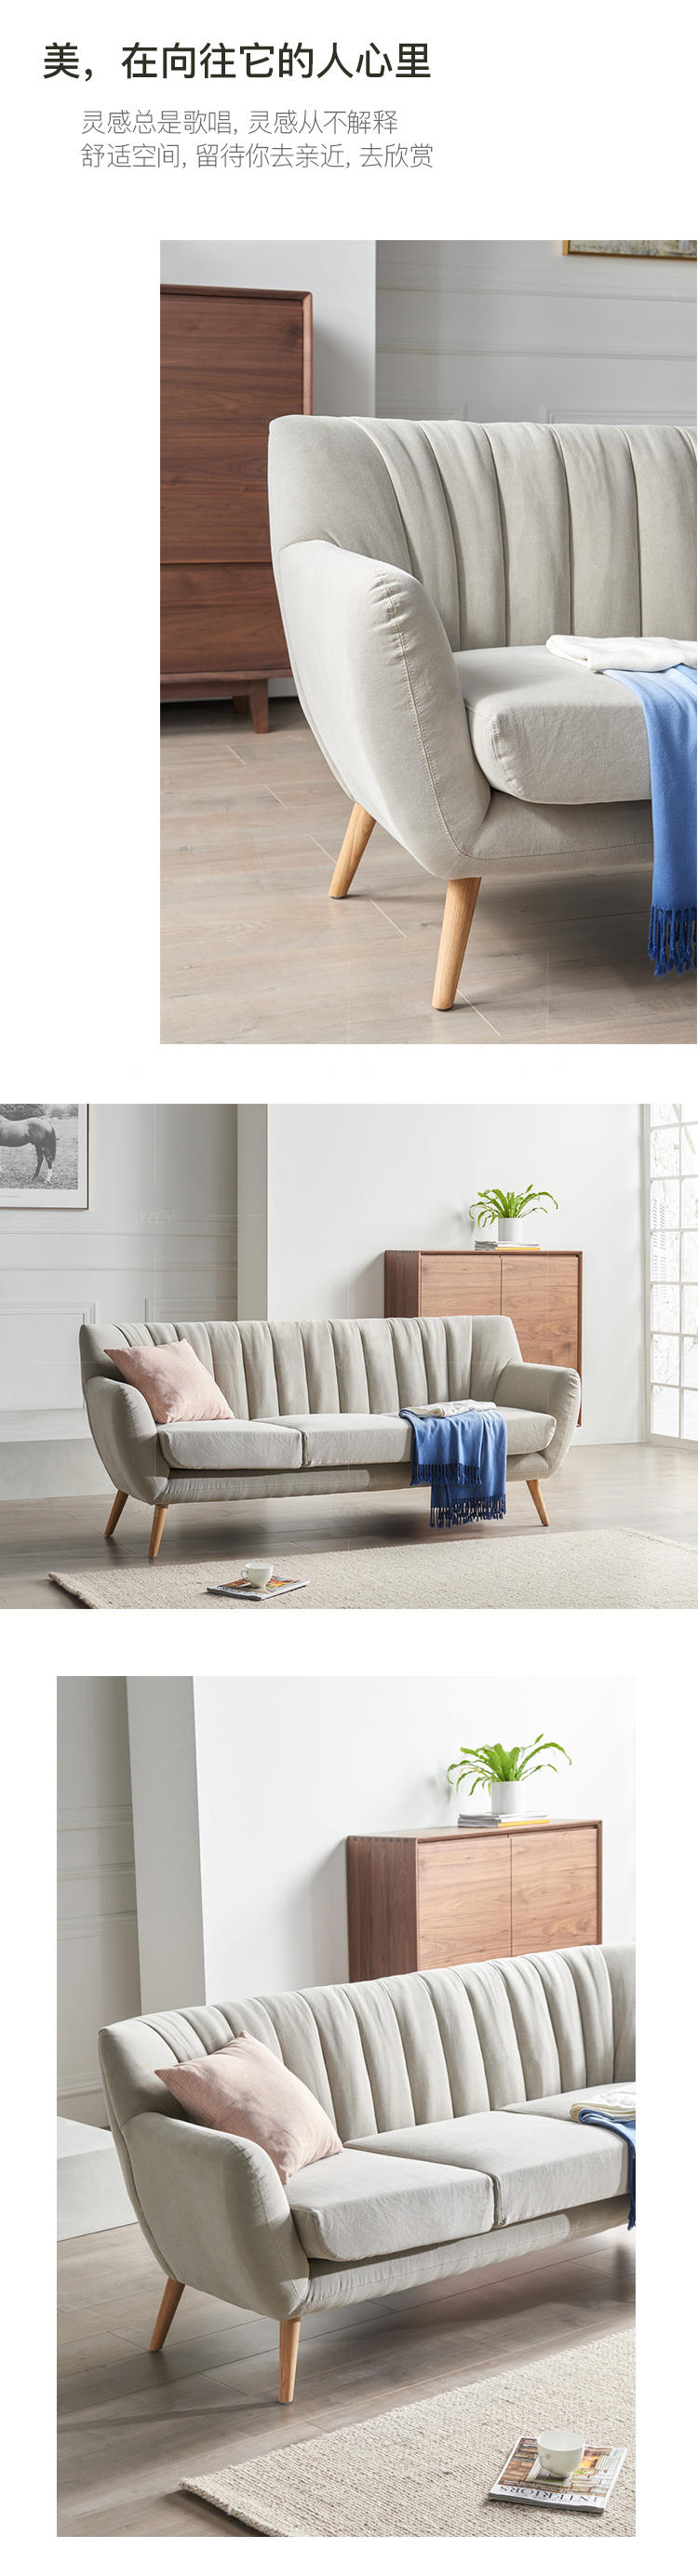 原木北欧风格浅木沙发的家具详细介绍